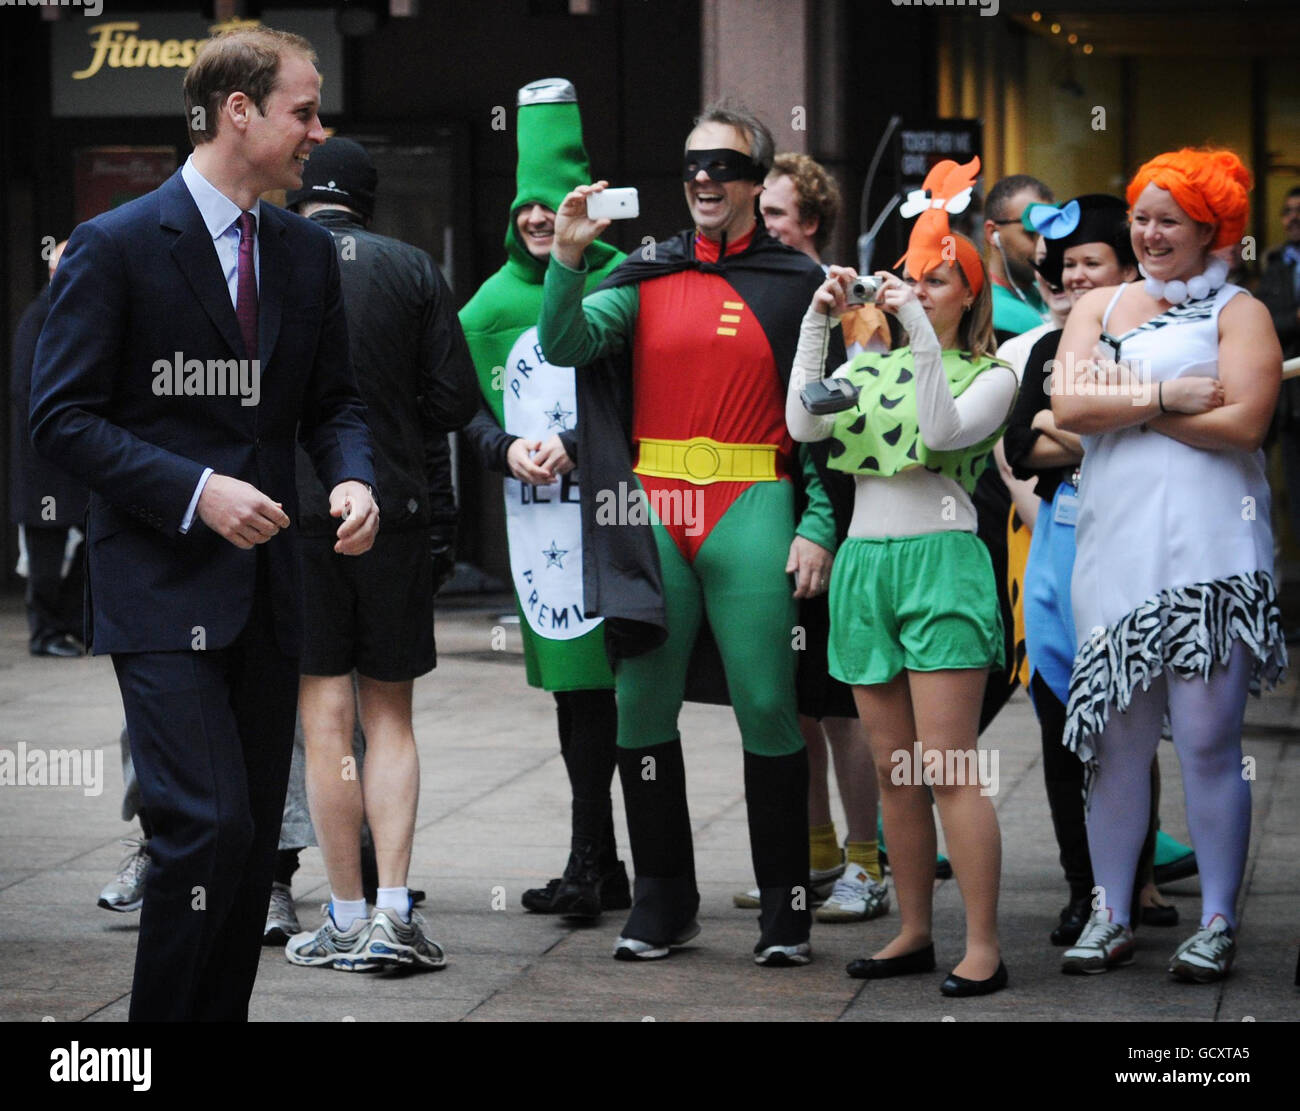 Le Prince William voit les membres du personnel vêtus pour une œuvre de charité au courtier interdistributeur ICAP lorsqu'il arrive à Londres pour la Journée annuelle des œuvres caritatives de l'ICAP. Banque D'Images